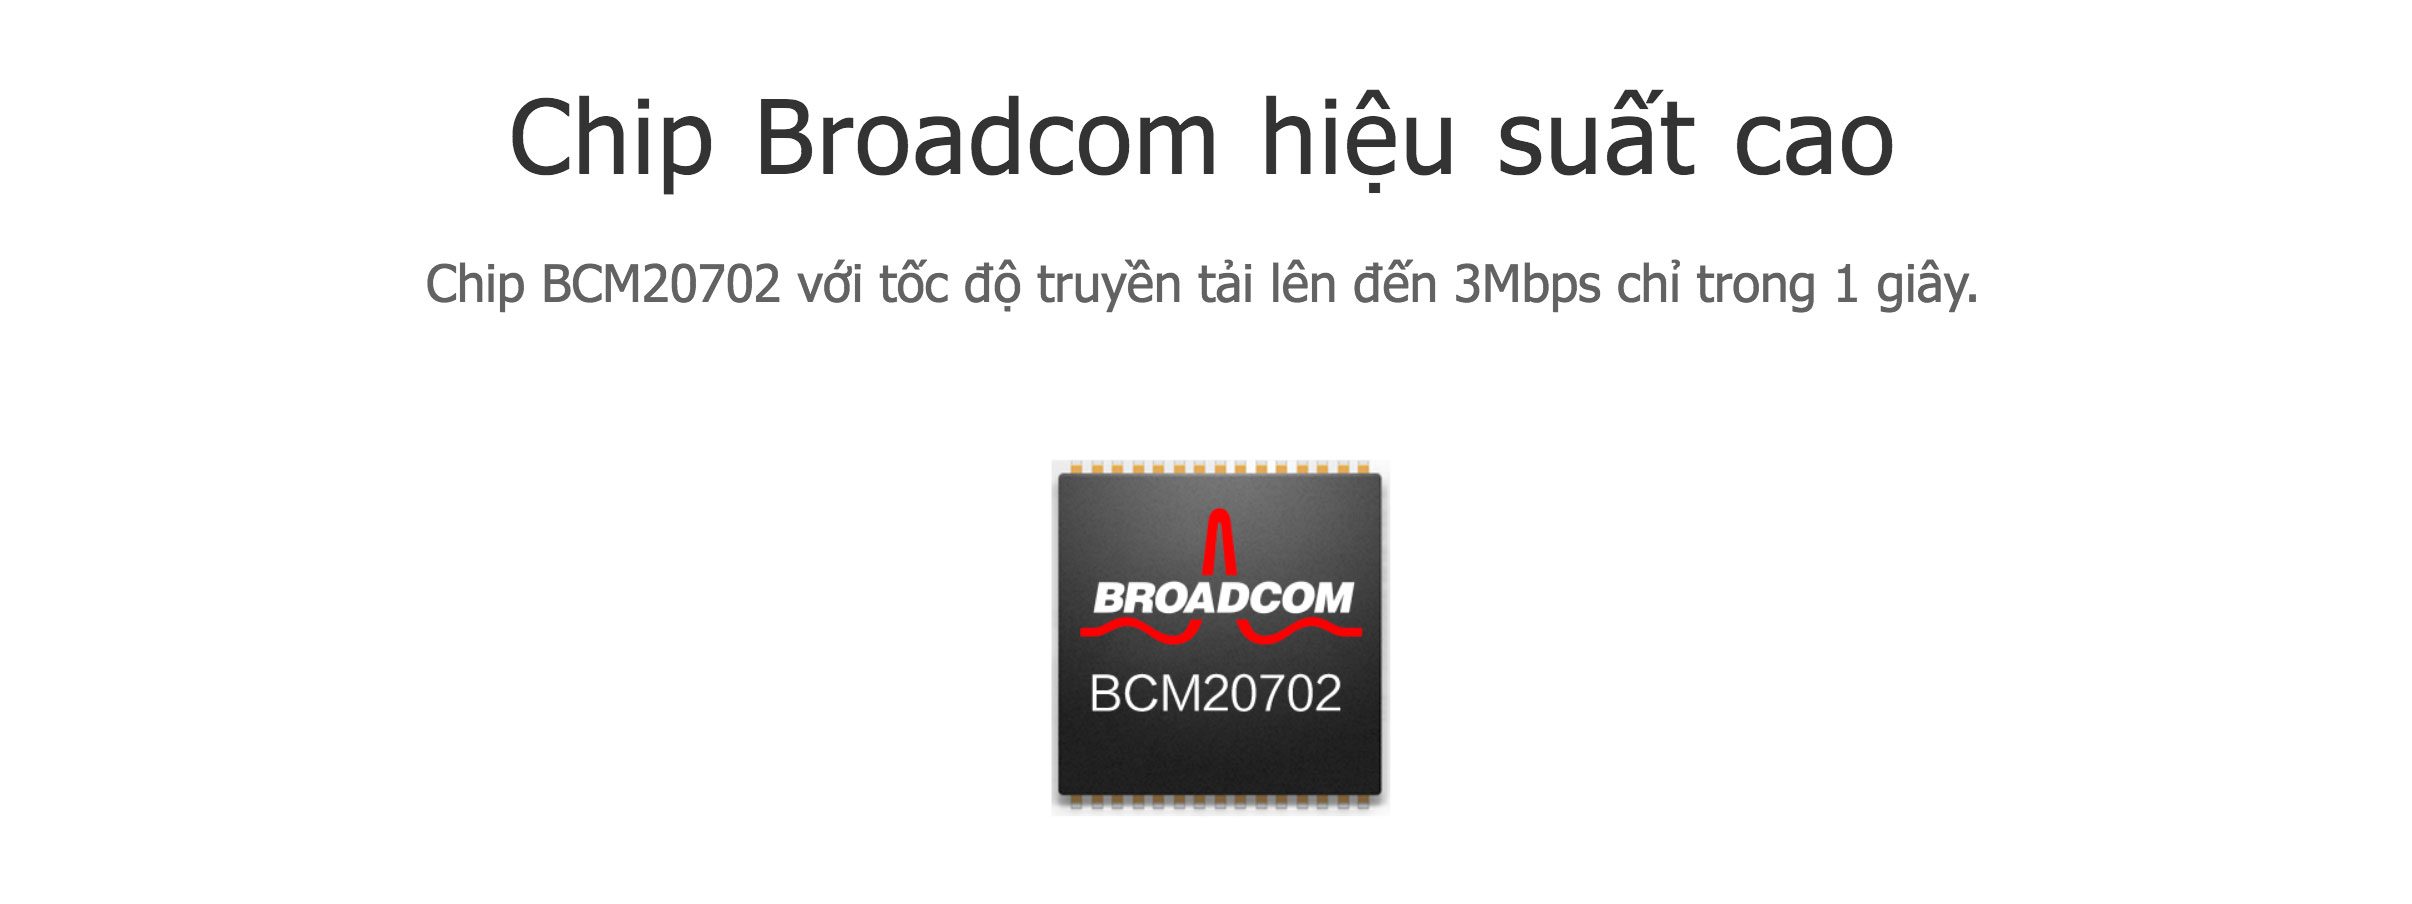 Chip Broadcom hiệu suất cao